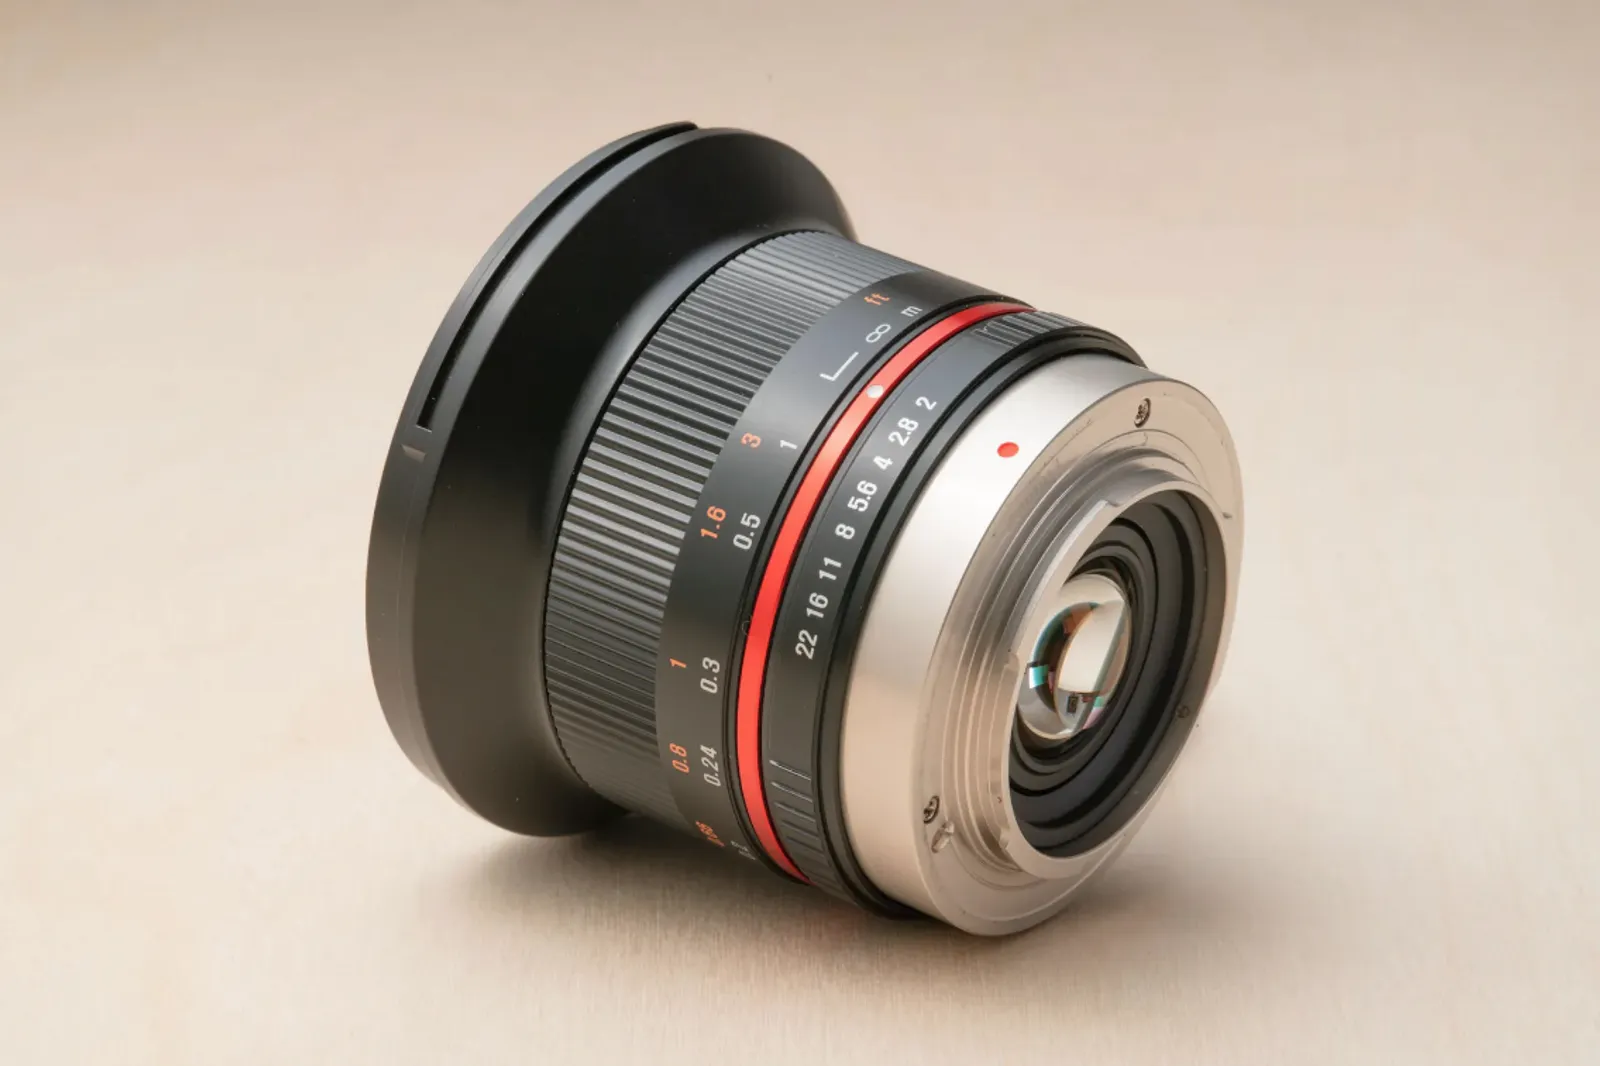 Samyang 12mm f2 lens for MFT